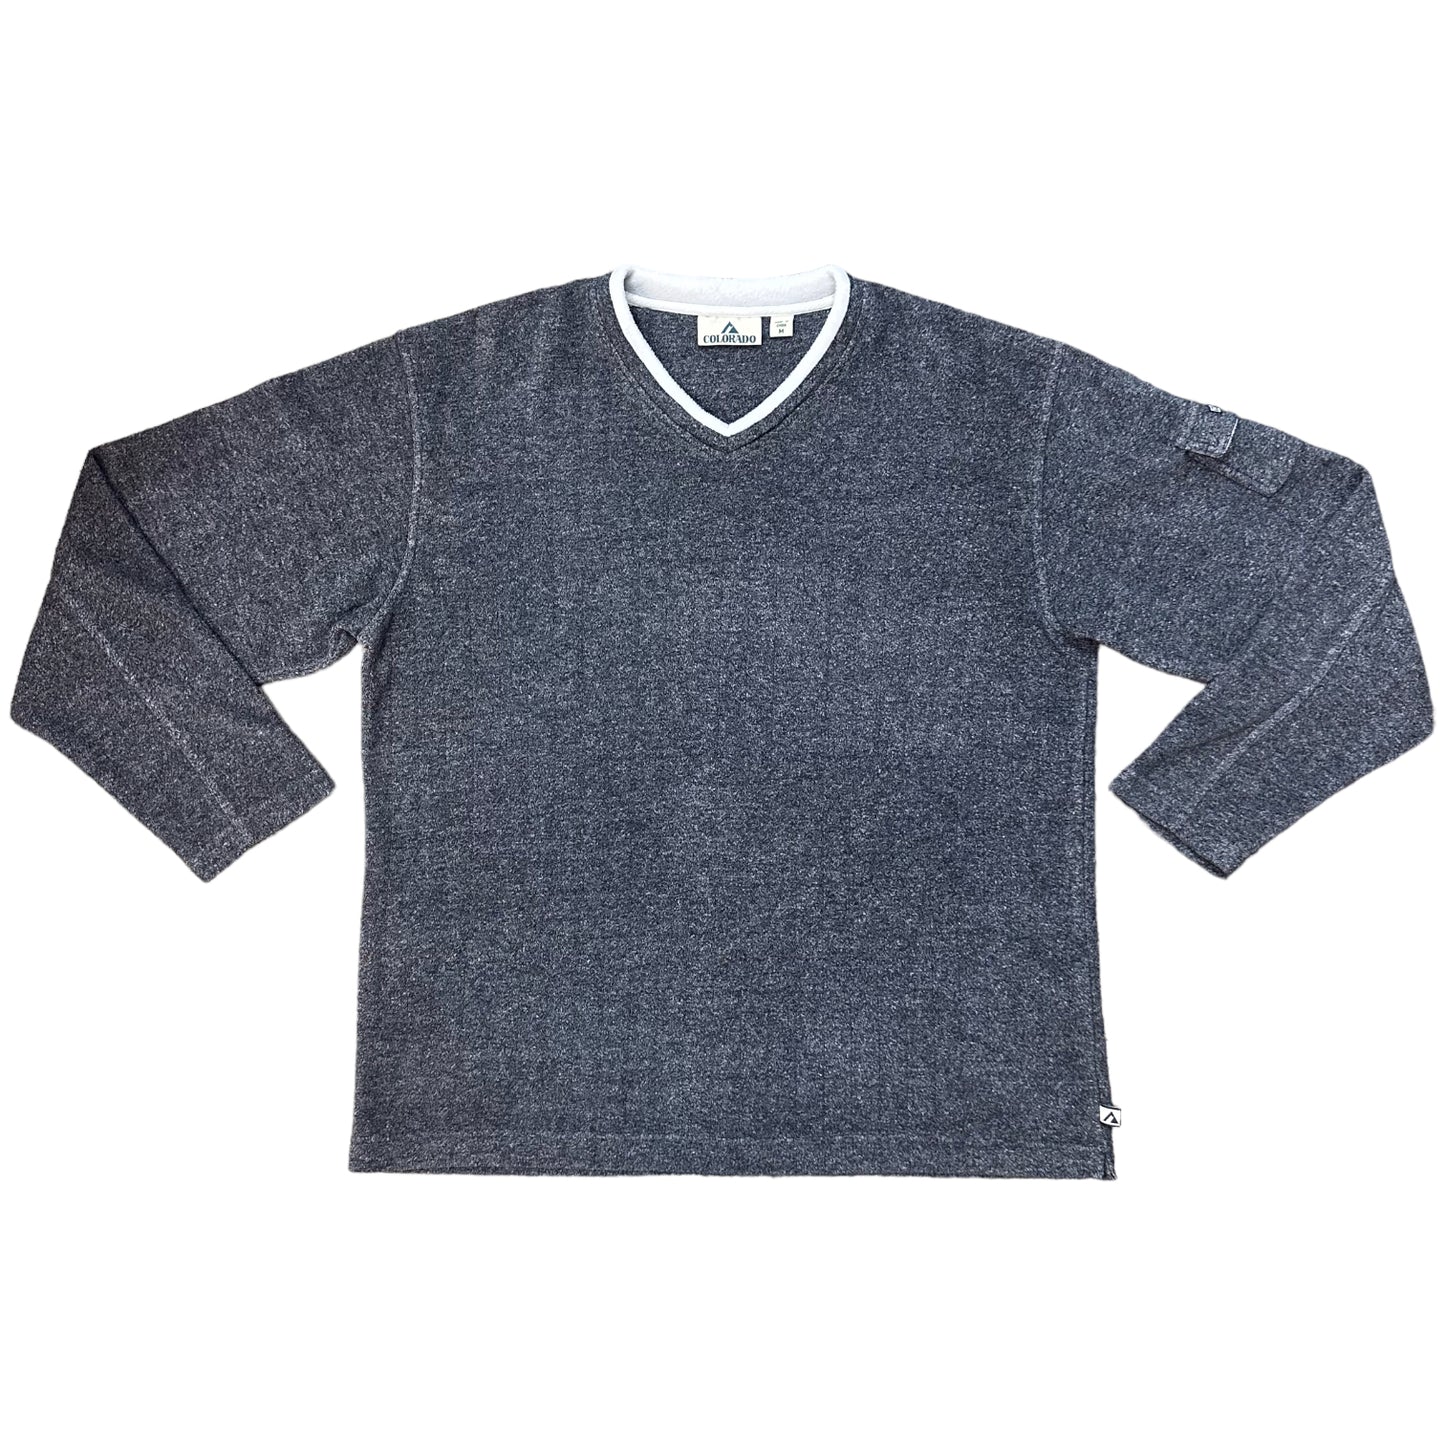 Vintage Colorado Sherpa Sweatshirt